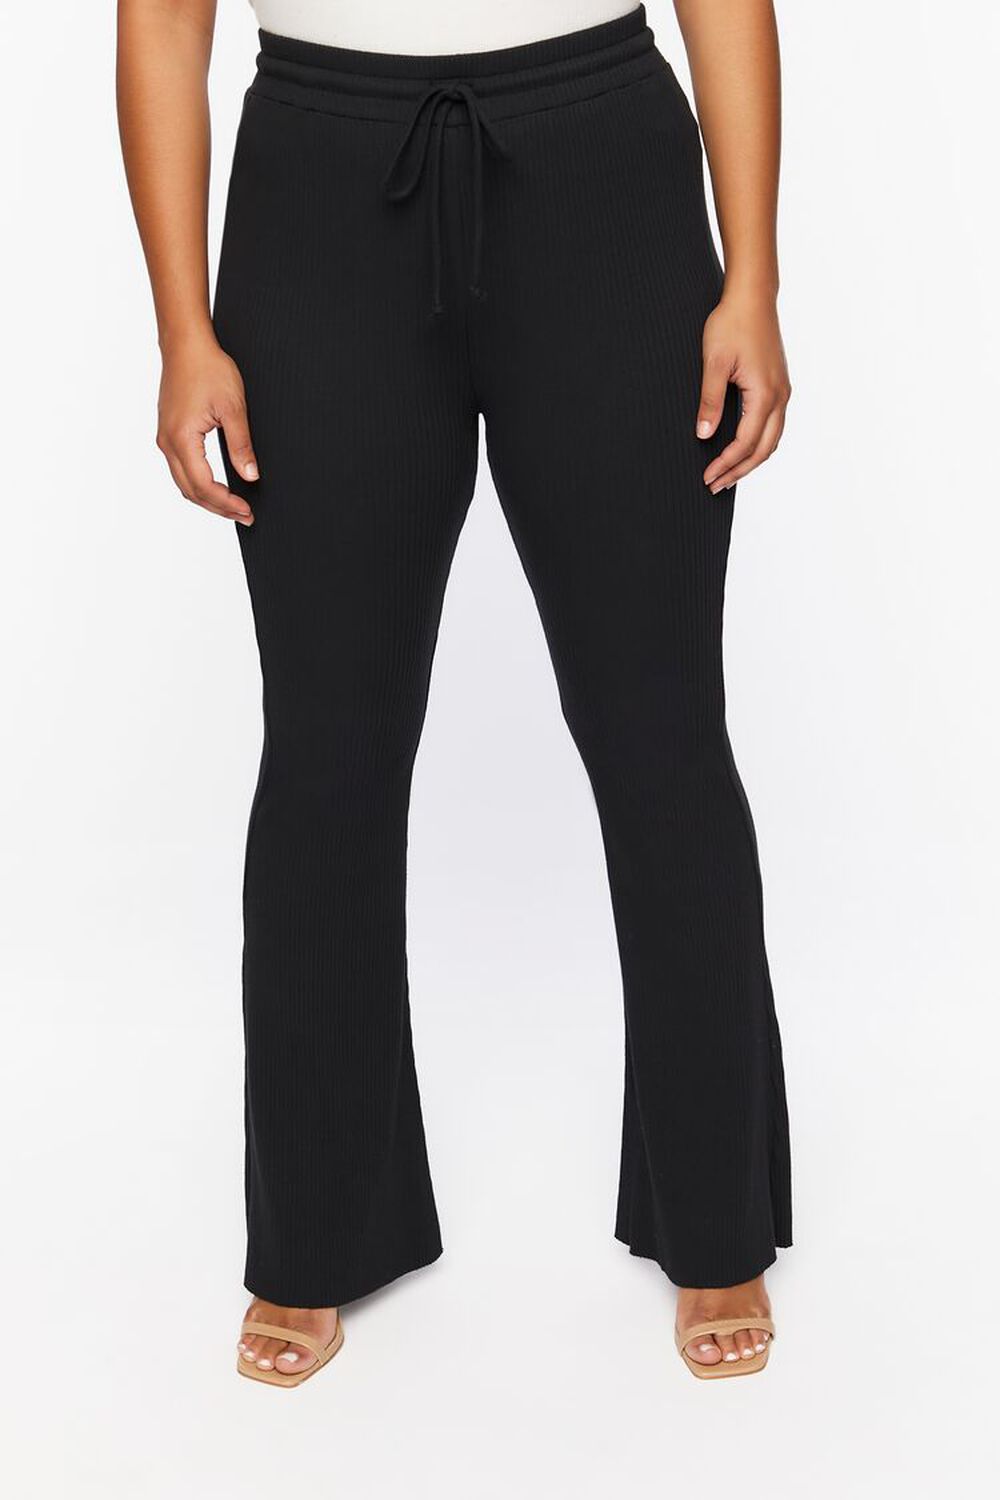 BLACK Plus Size Rib-Knit Flare Pants, image 2